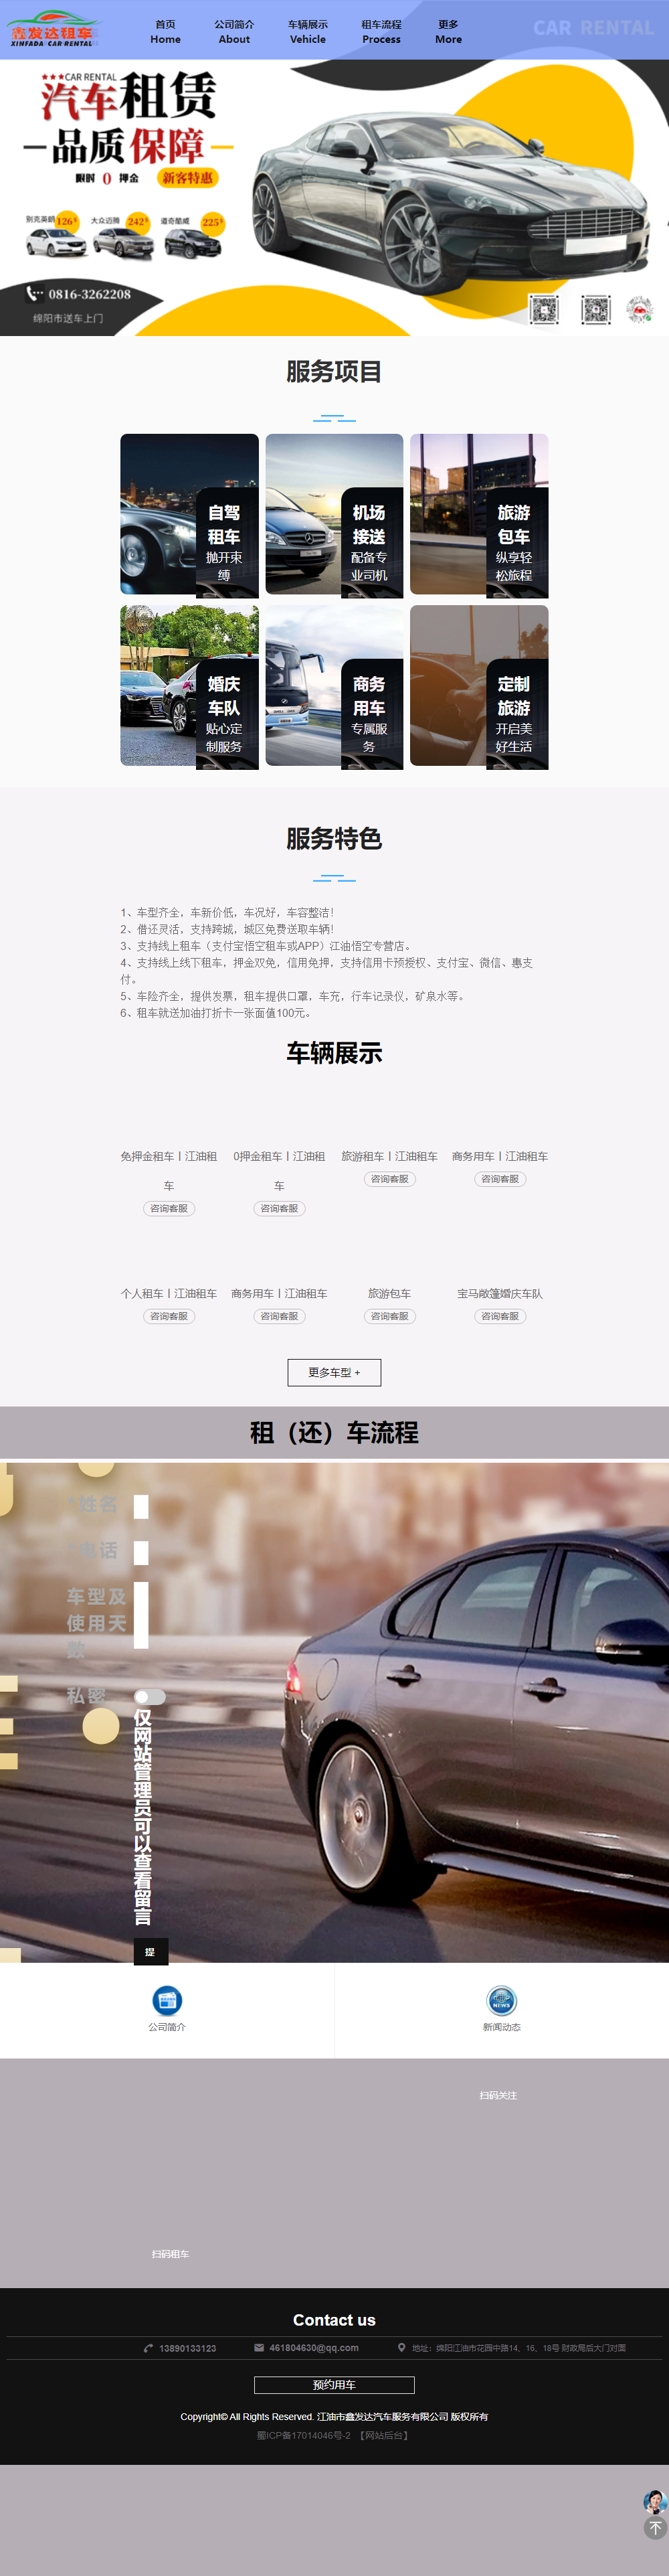 江油市鑫发达汽车服务有限公司网站案例